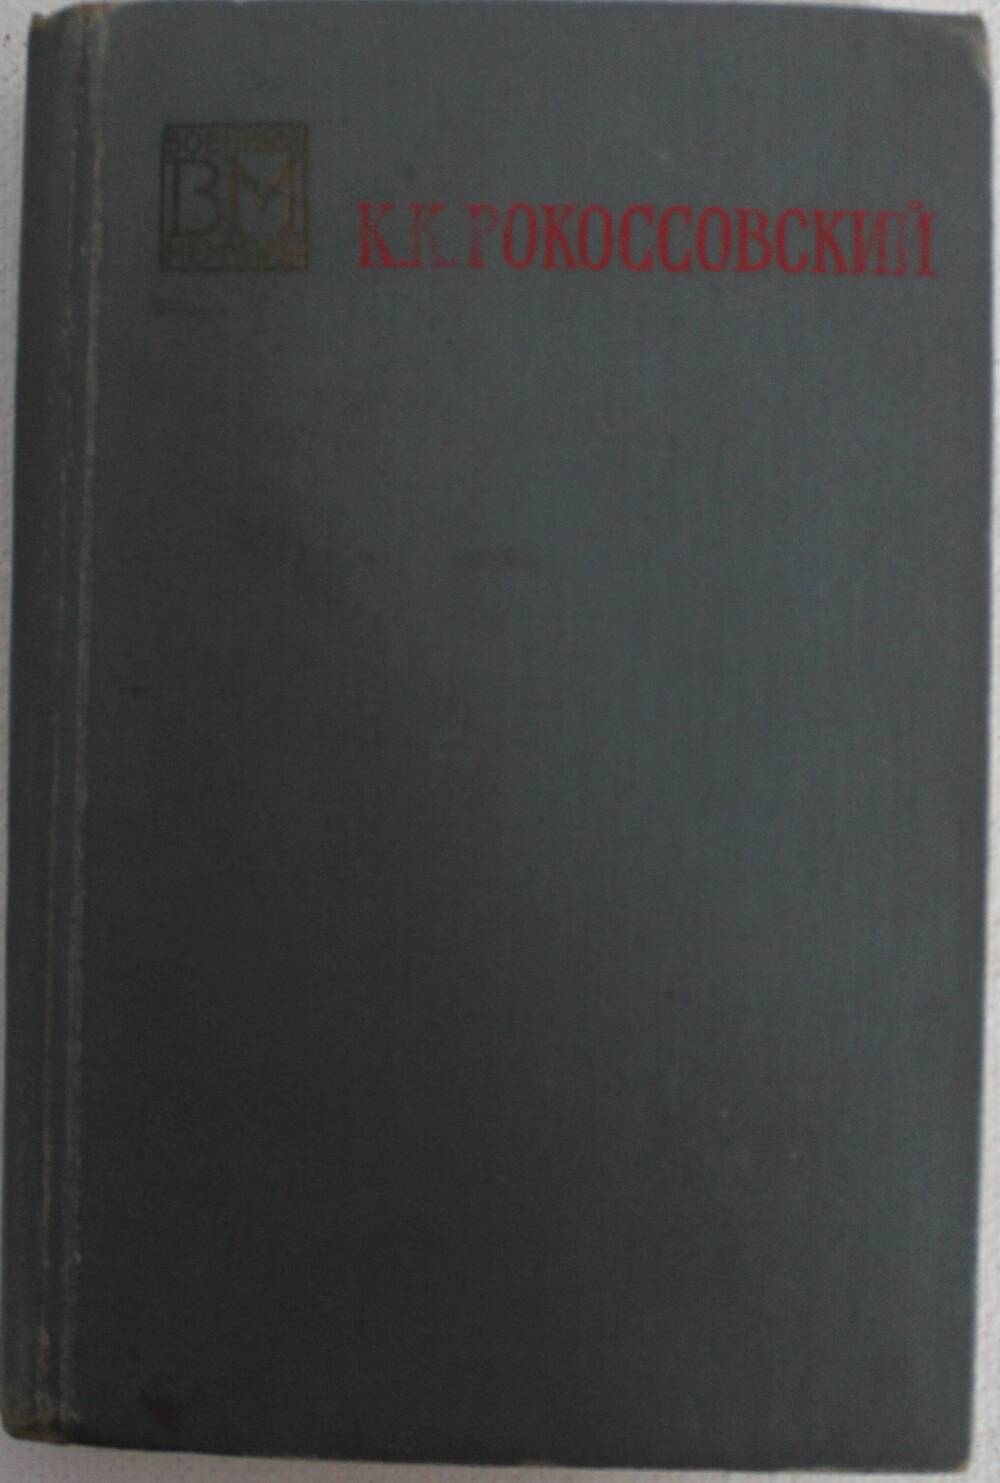 Книга Рокоссовского К.К. Солдатский долг, Изд. Мин.обороны, Москва, 1968 г.